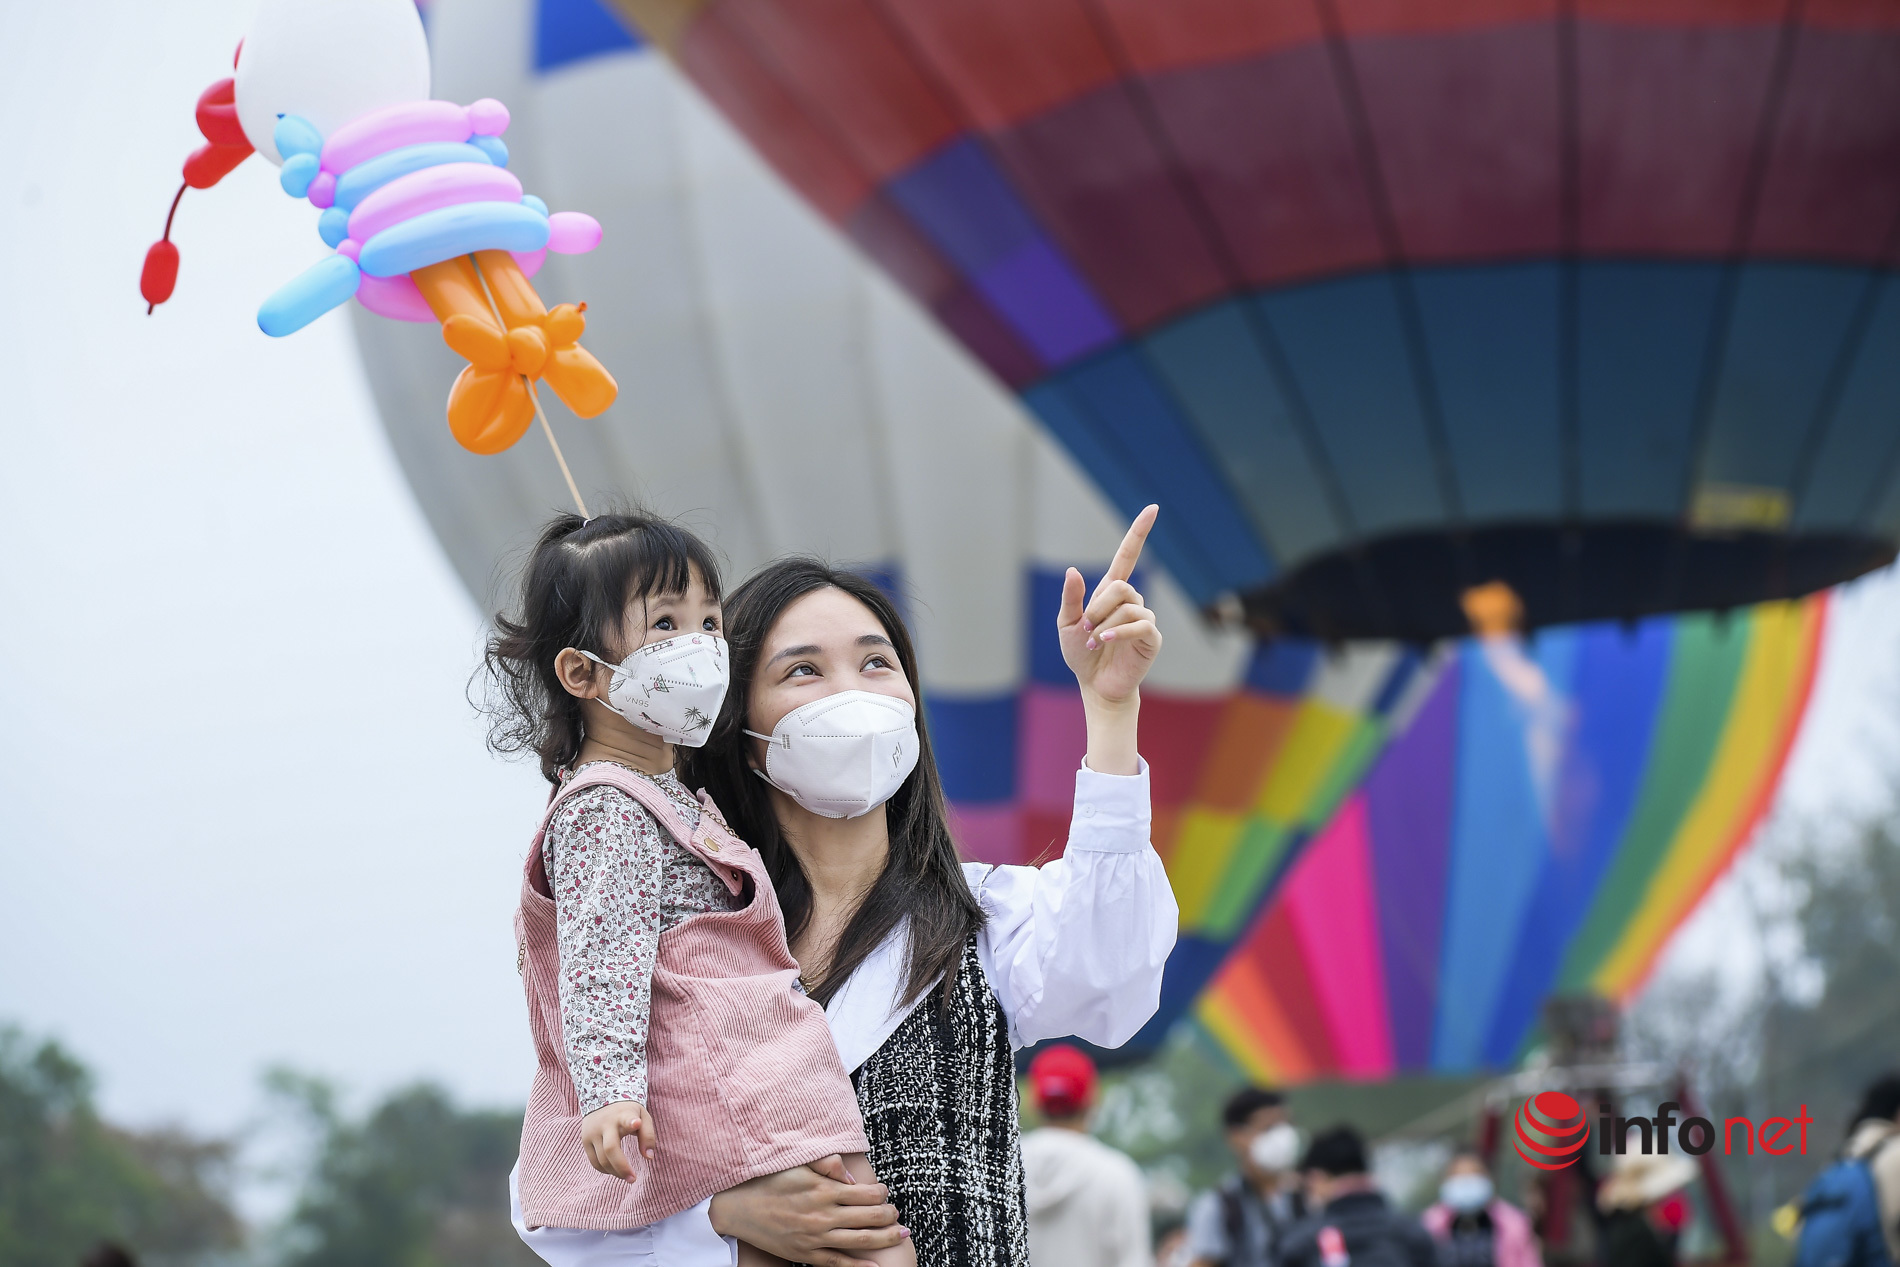 Lễ hội khinh khí cầu Tuyên Quang hút khách, 'cháy' vé bay tại chỗ, lý giải việc 'hạ cánh ở ruộng ngô'